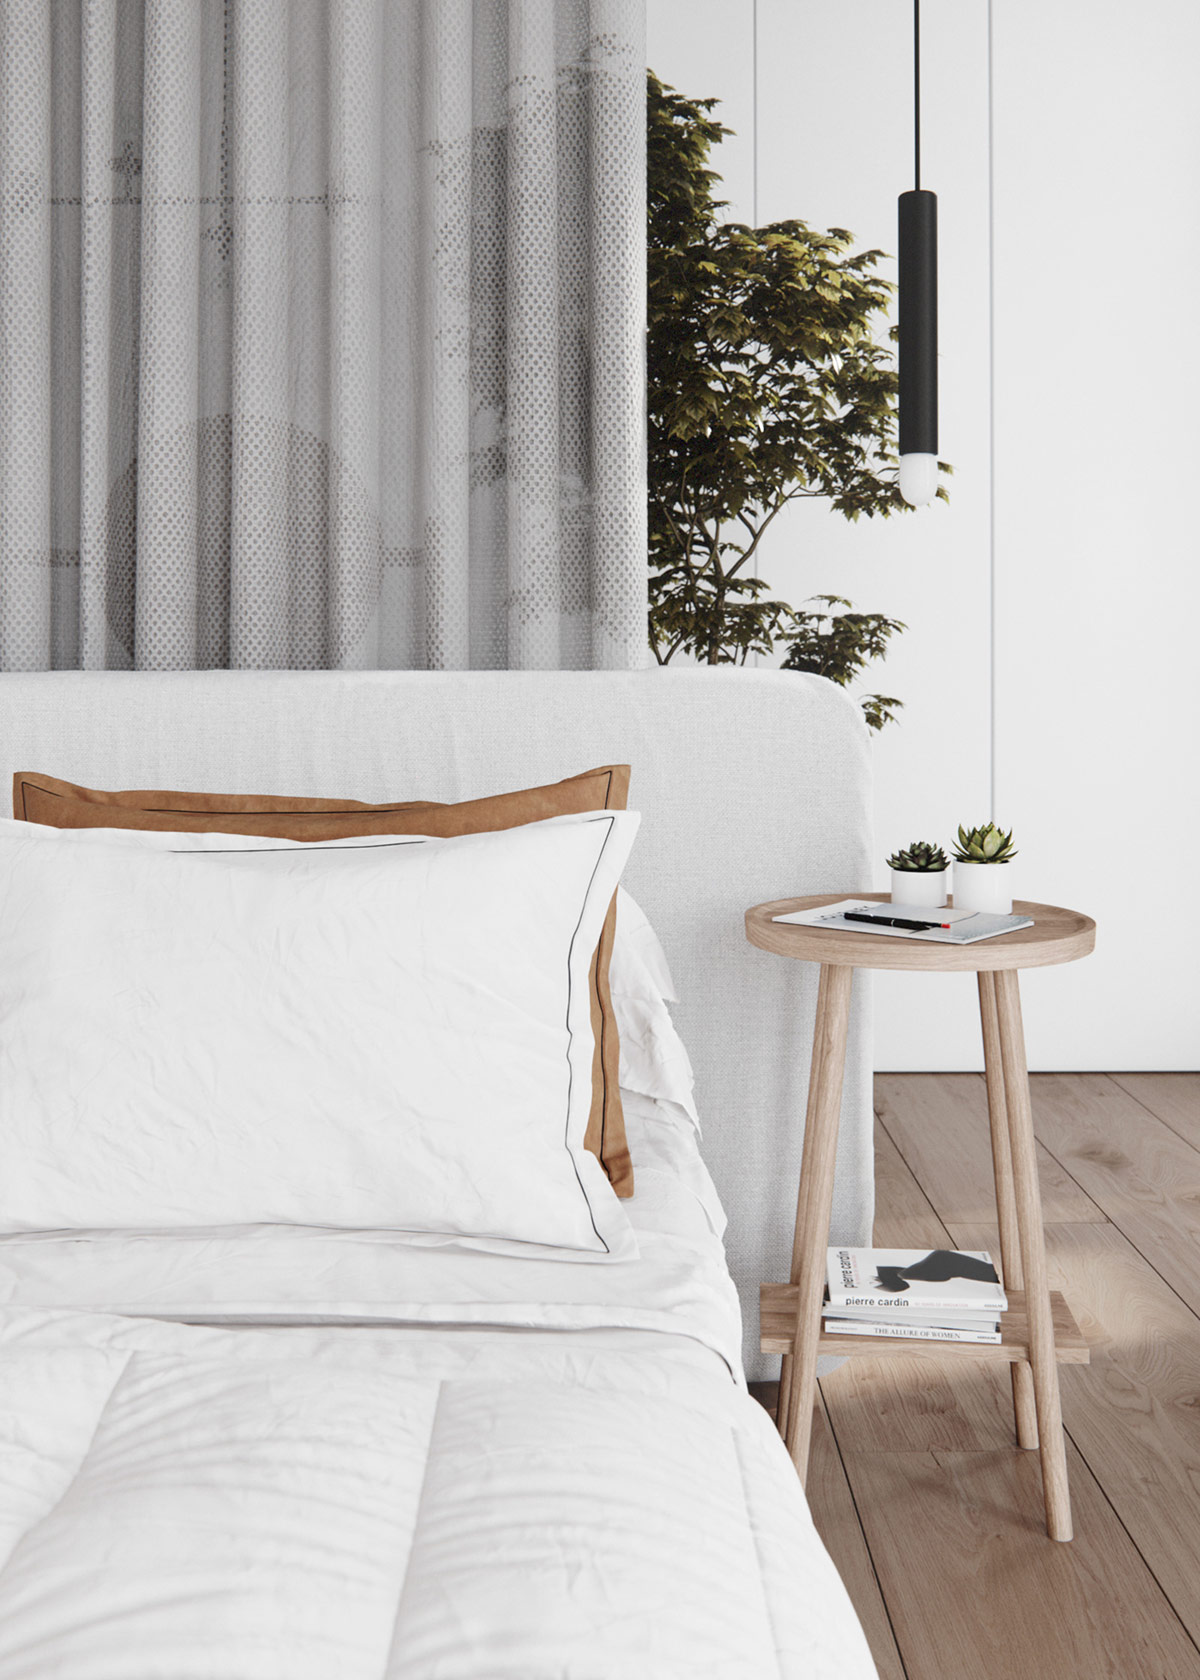 Táp đầu giường có thiết kế tối giản, trang trí bởi 2 chậu cây thuộc loài mọng nước xinh xinh. Cặp đèn thả đen - trắng mảnh mai buông xuống làm duyên cho giường ngủ.